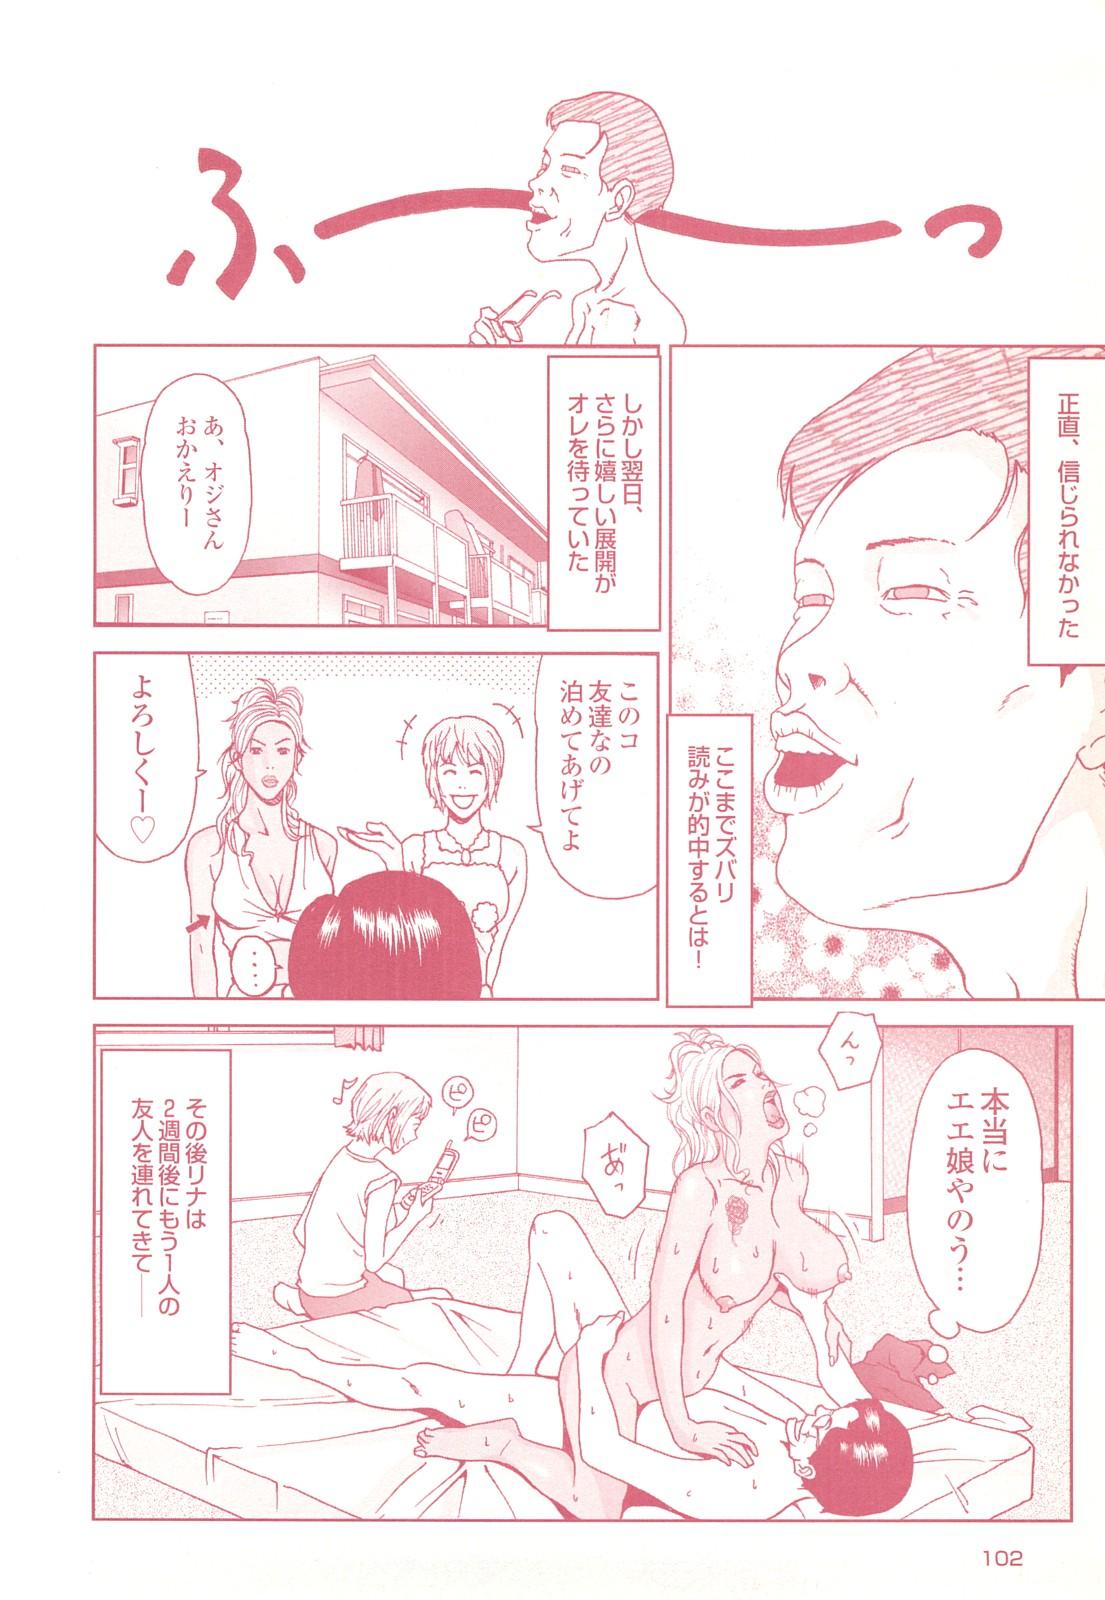 コミック裏モノJAPAN Vol.18 今井のりたつスペシャル号 101